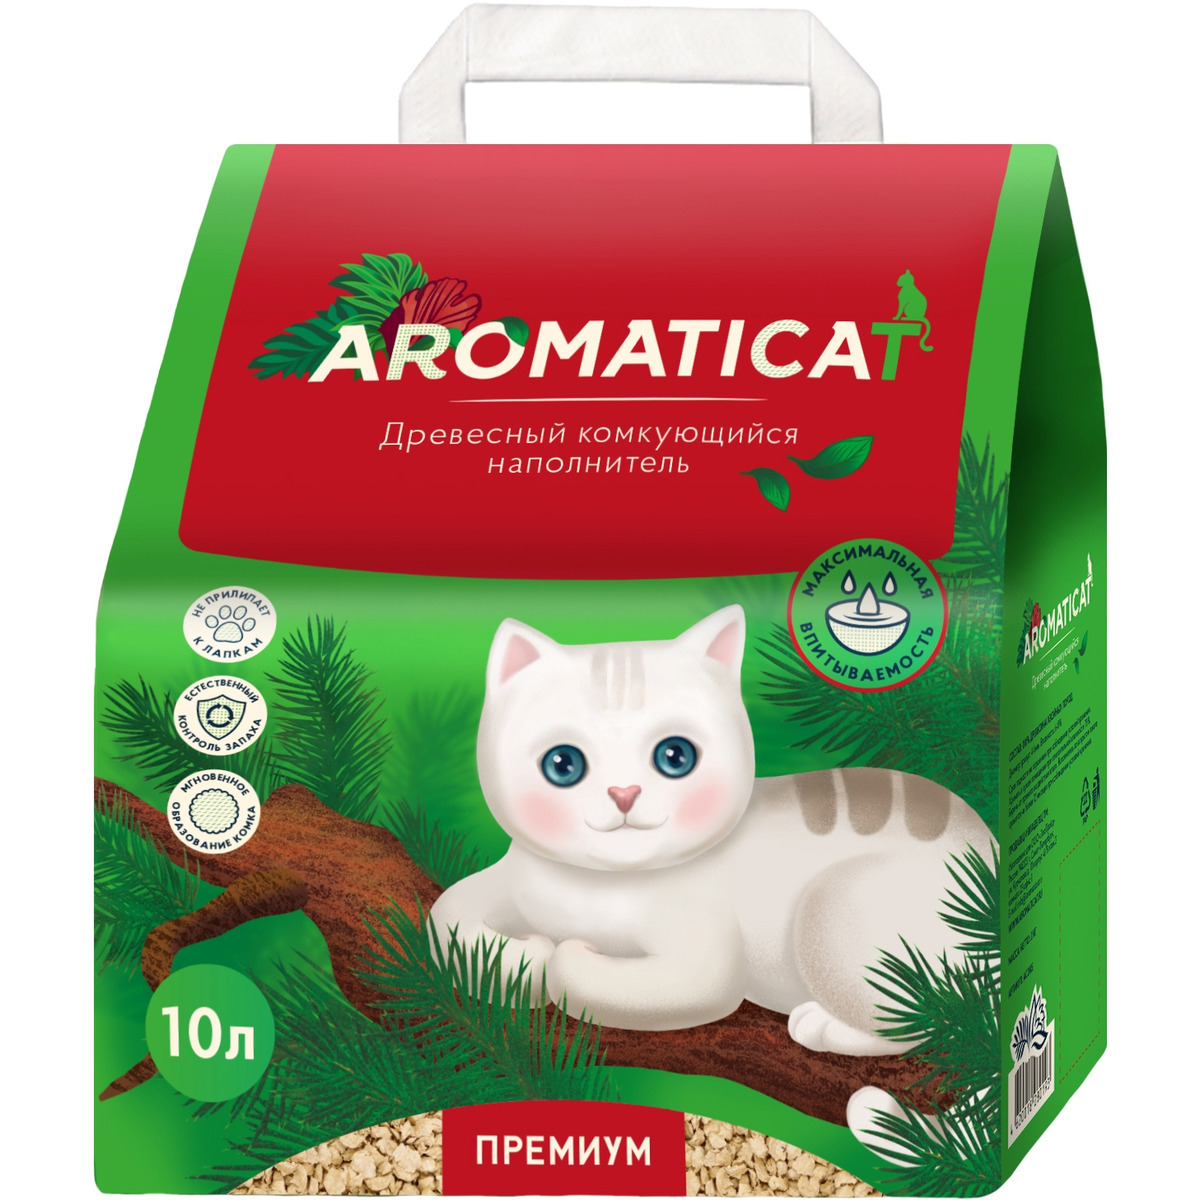 Primordial – корм для кошек